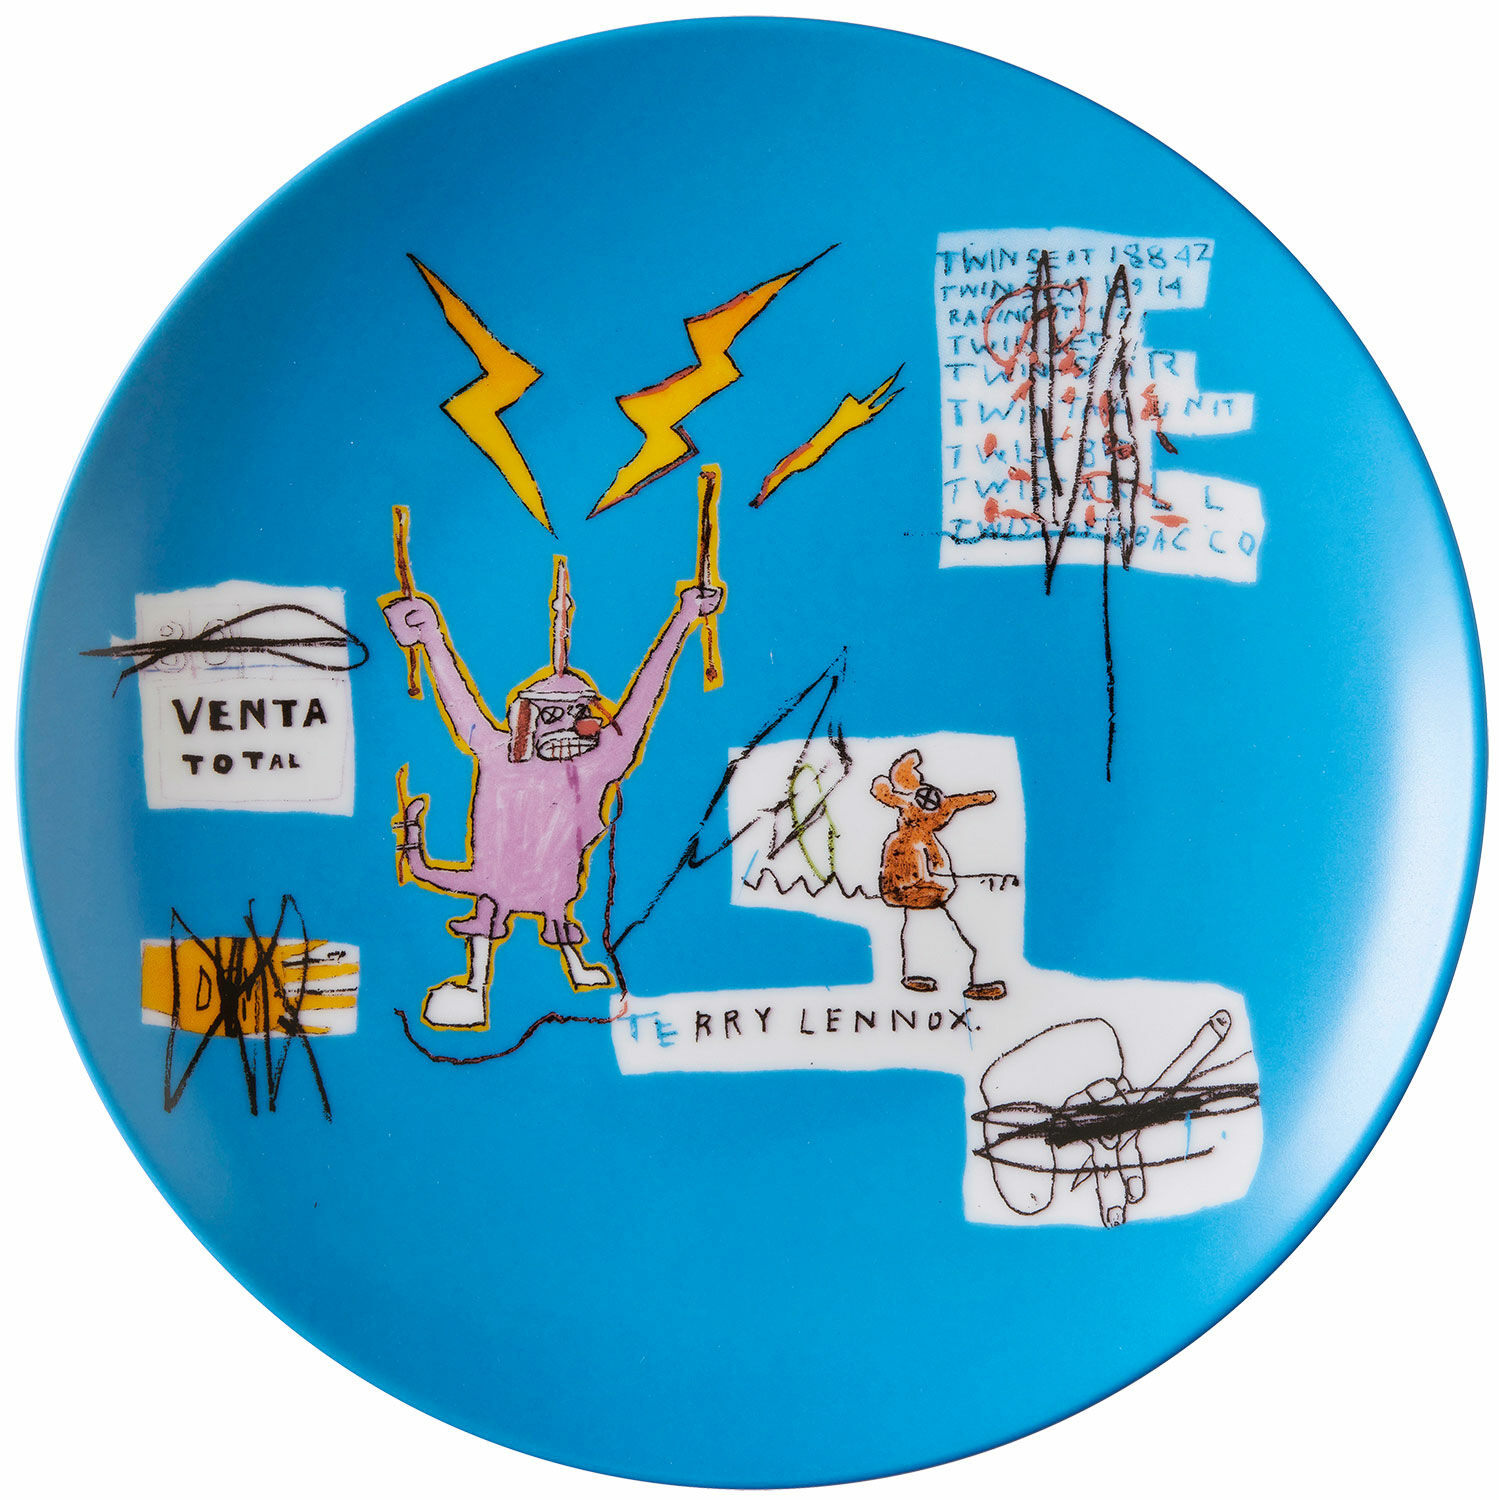 Porseleinen bord "Venta" von Jean Michel Basquiat